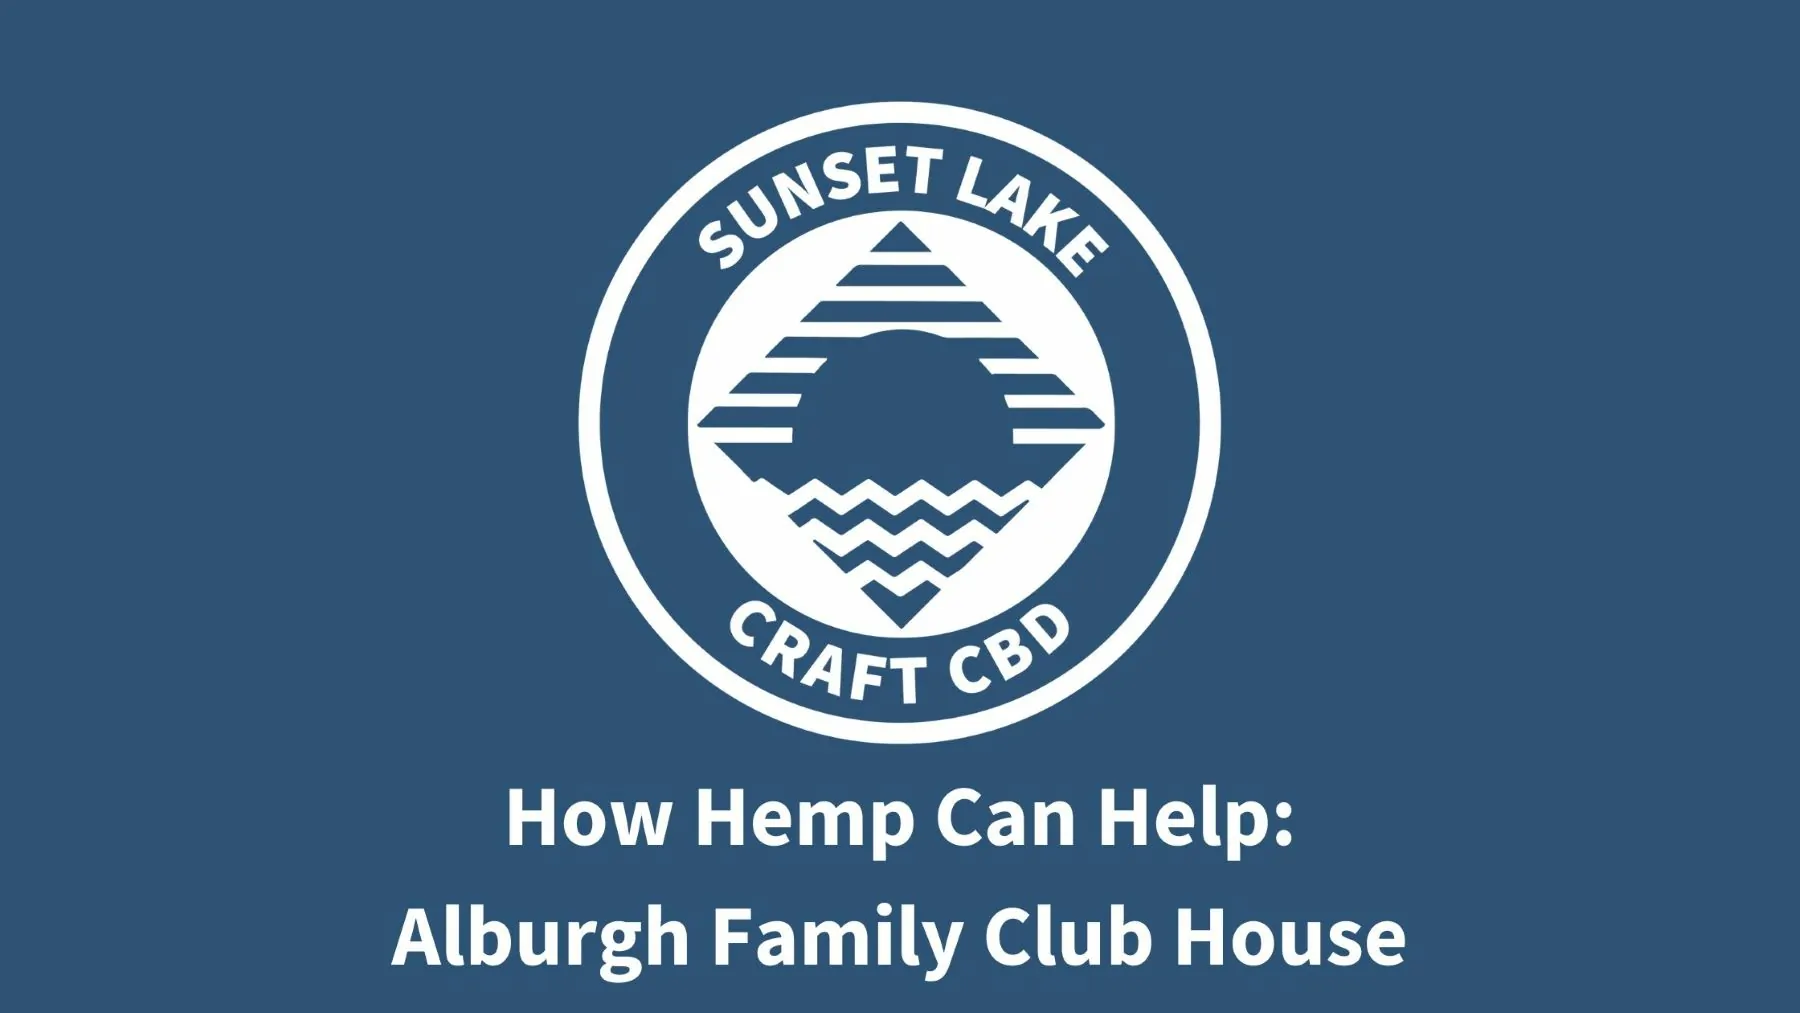 How Hemp Can Help: The Alburgh Family Club House